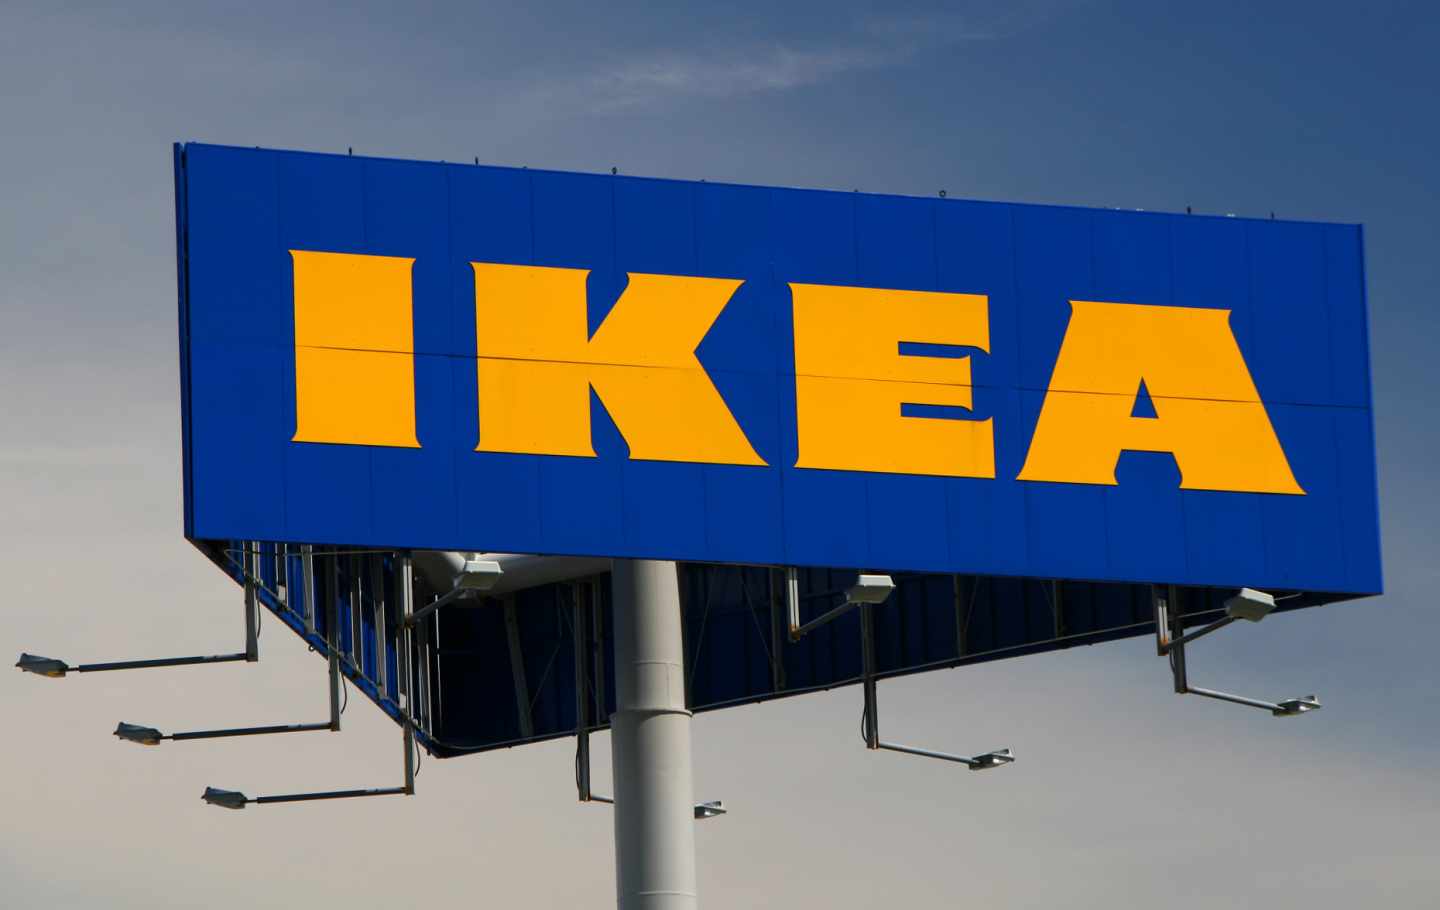 Ikea recorta sus beneficios un 40% en el último año.